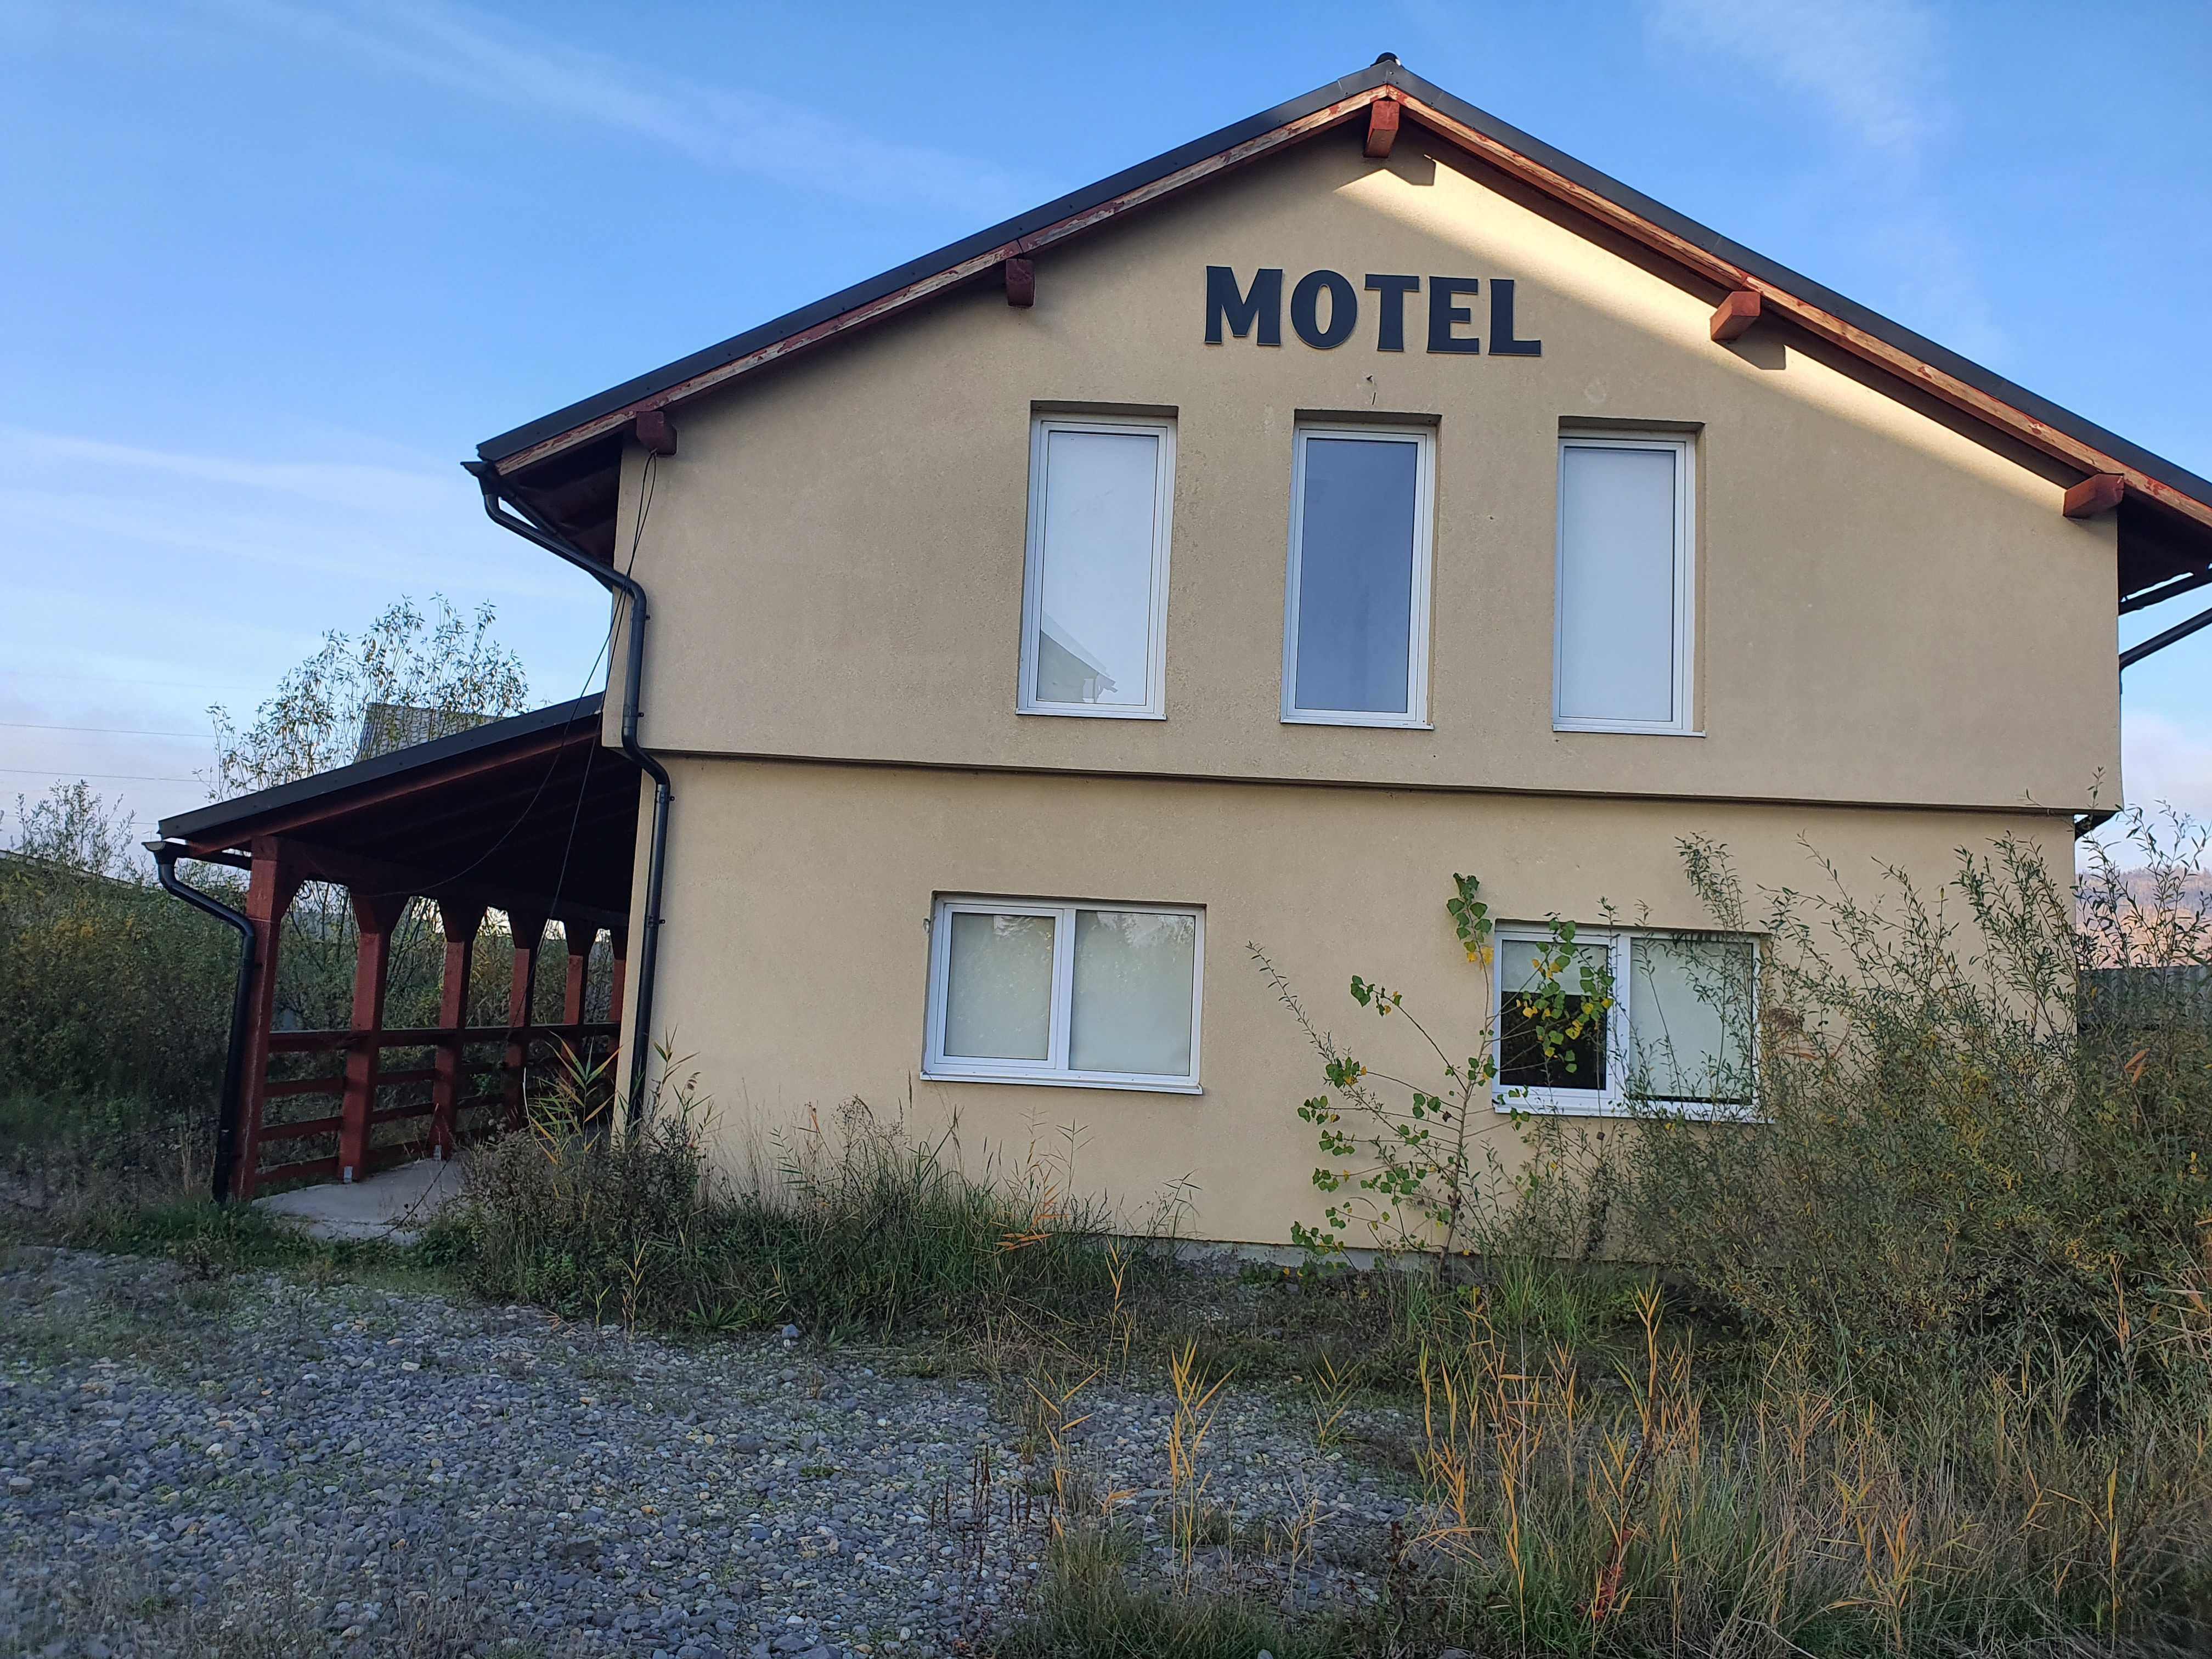 Teren intravilan 3800 mp + Sopron 1072mp + Motel. Str Forestierului